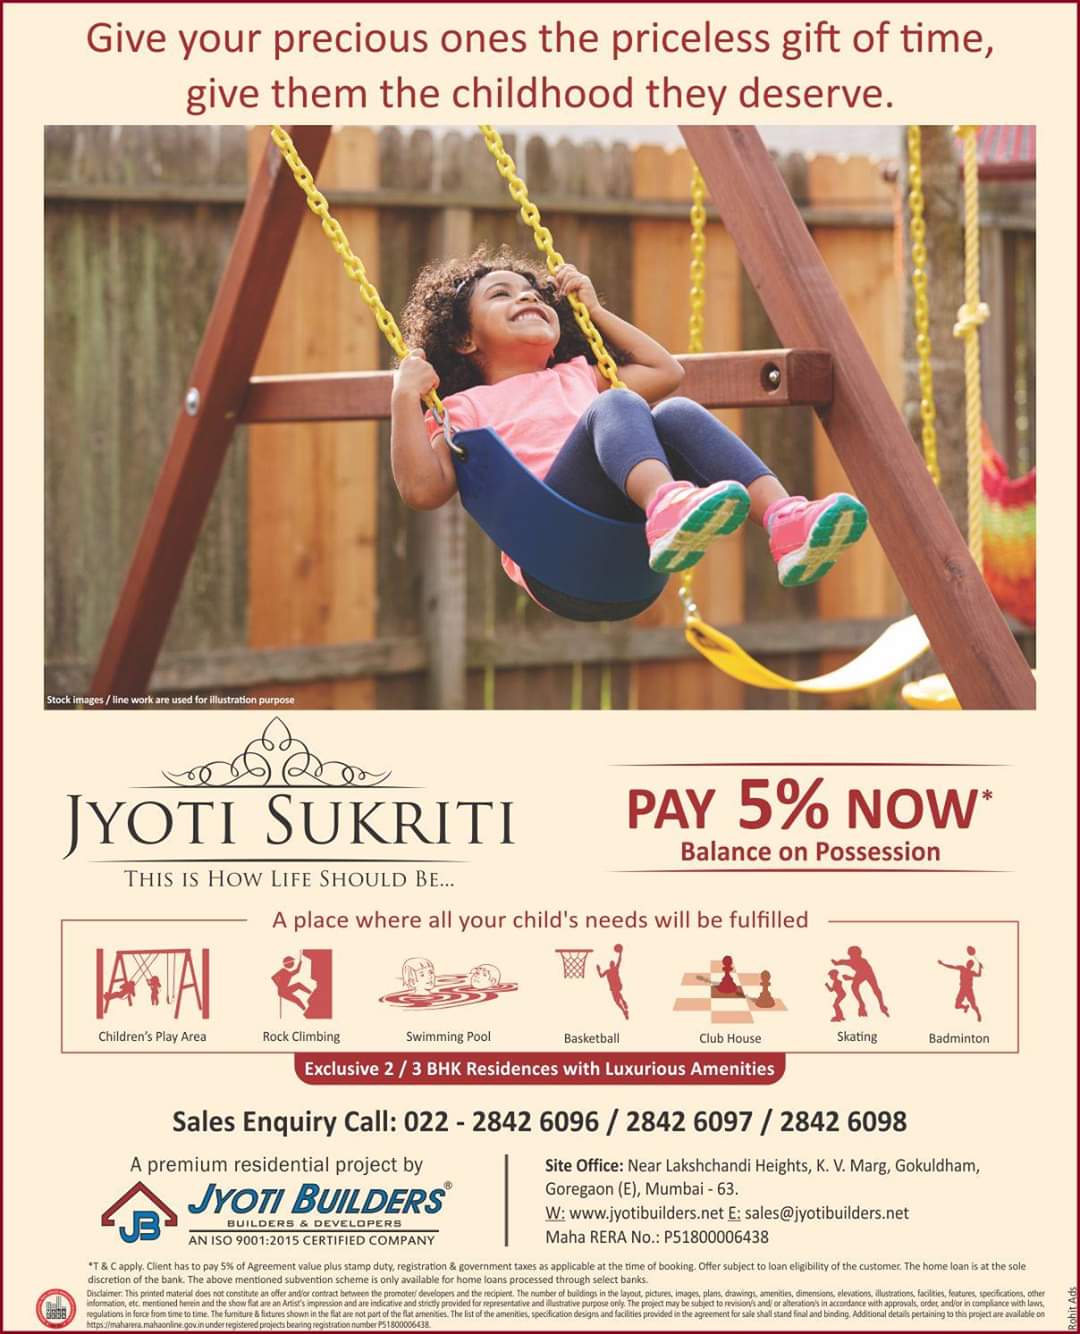 Jyoti Sukriti